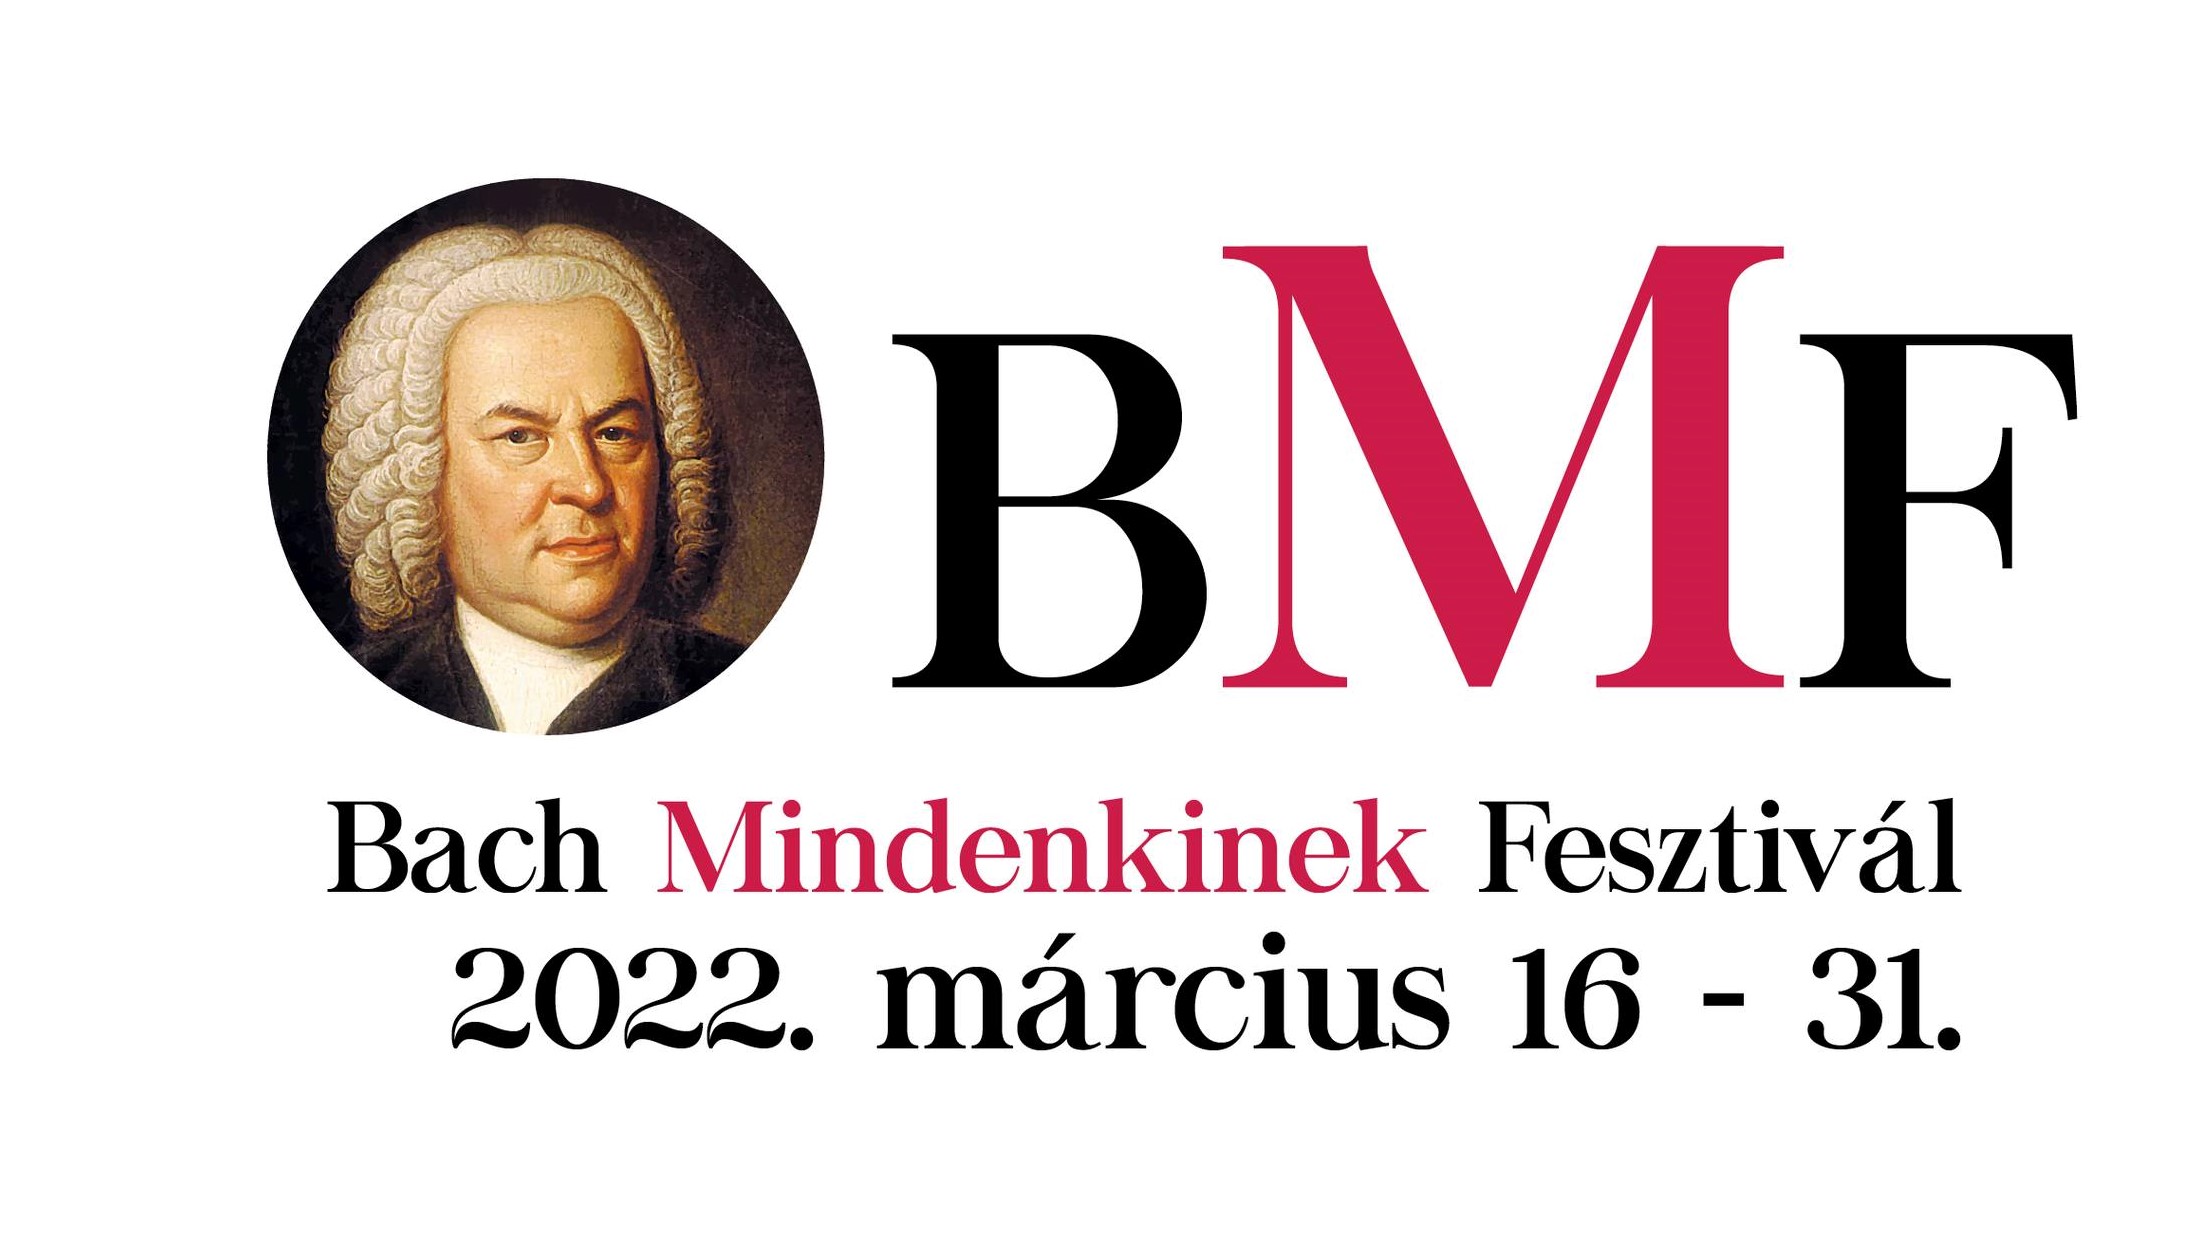 Bach Mindenkinek Fesztivál Nagyváradon, Tordán, Kézdivásárhelyen is